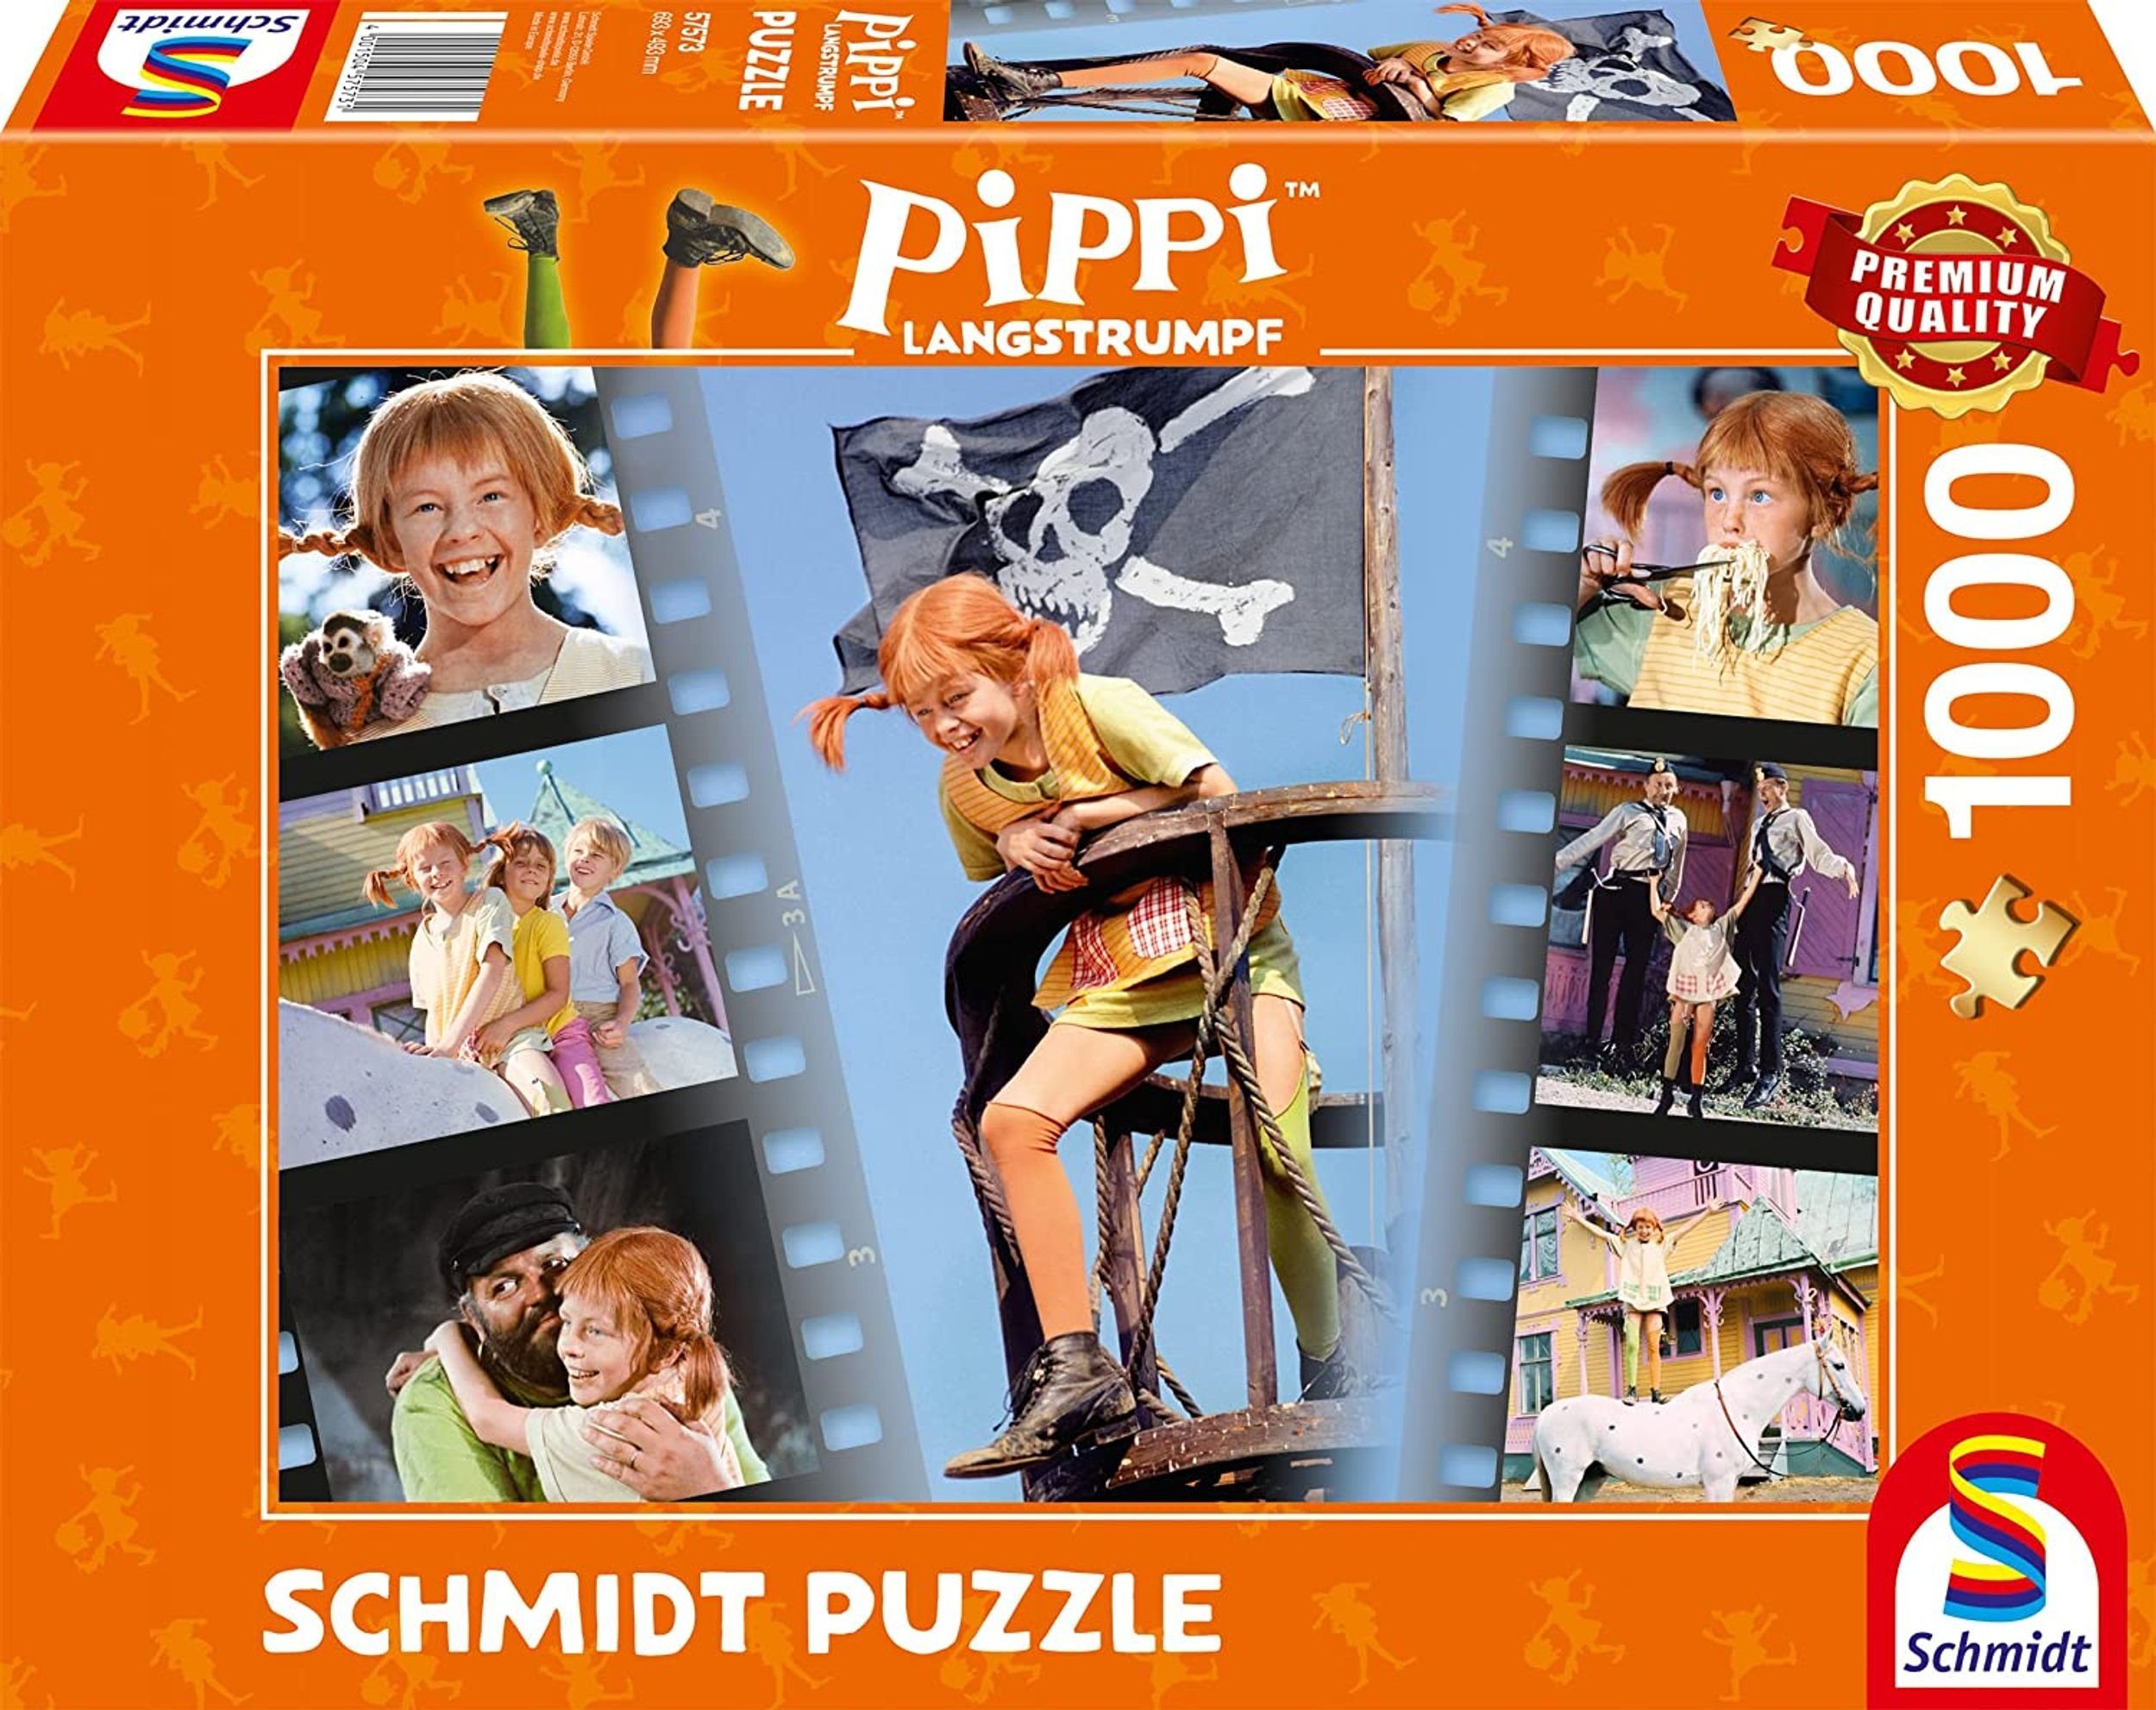 Schmidt Spiele Puzzle Pippi Langstrumpf - Sei frech wild und wunderbar, 1000 Puzzleteile | Puzzle